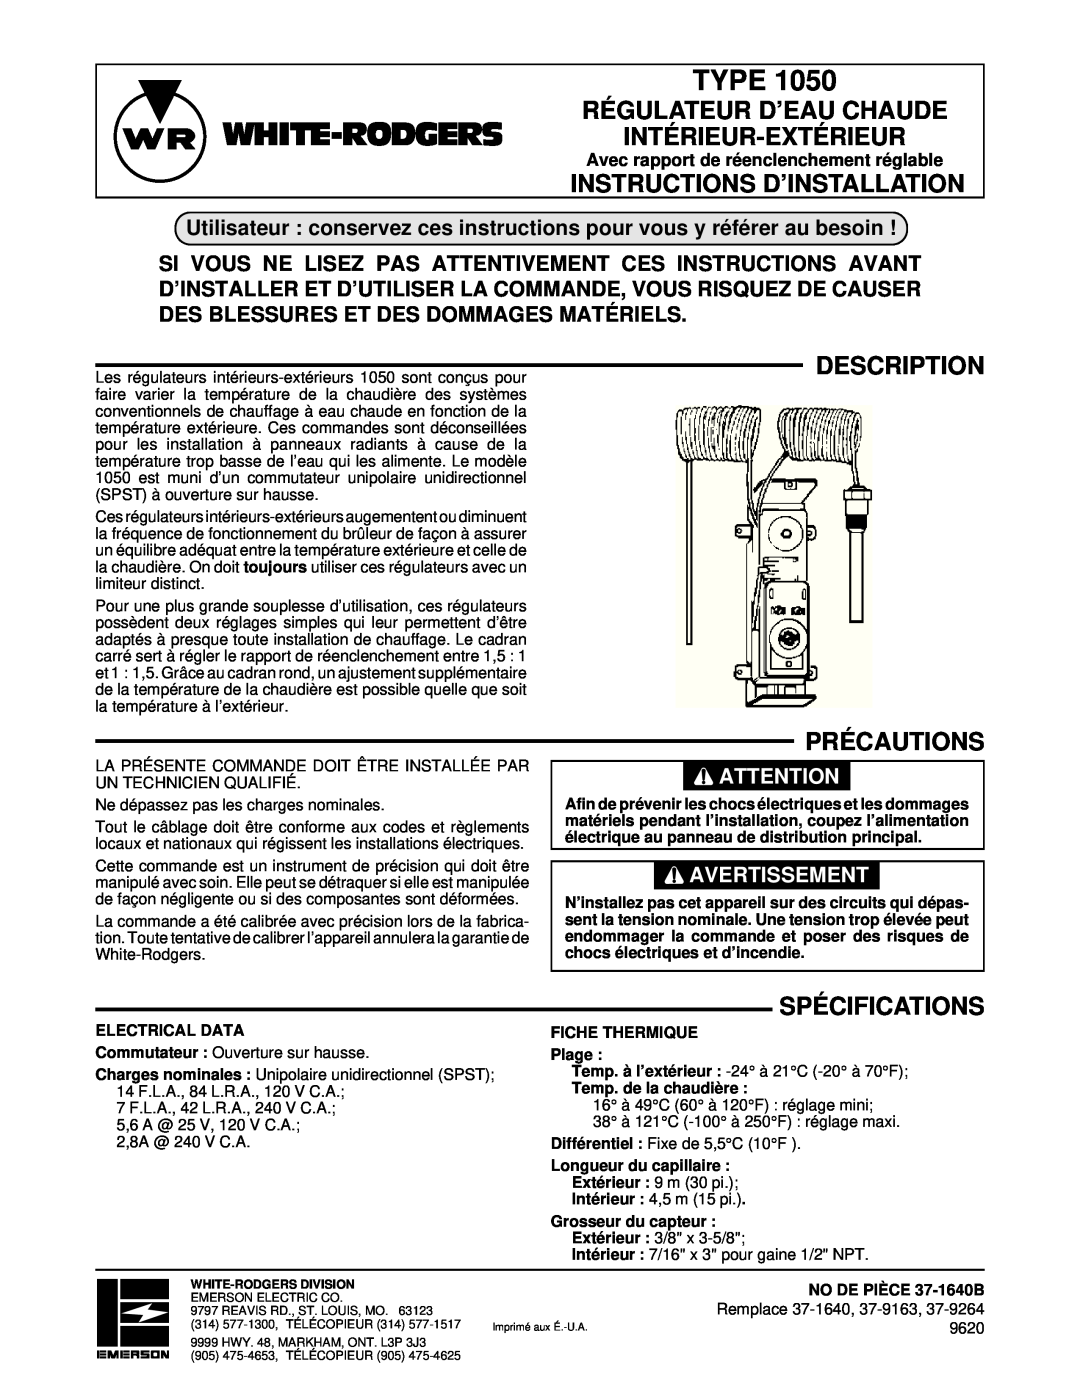 White Rodgers 1050 Régulateur D’Eau Chaude Intérieur-Extérieur, Instructions D’Installation, Description Précautions, Type 